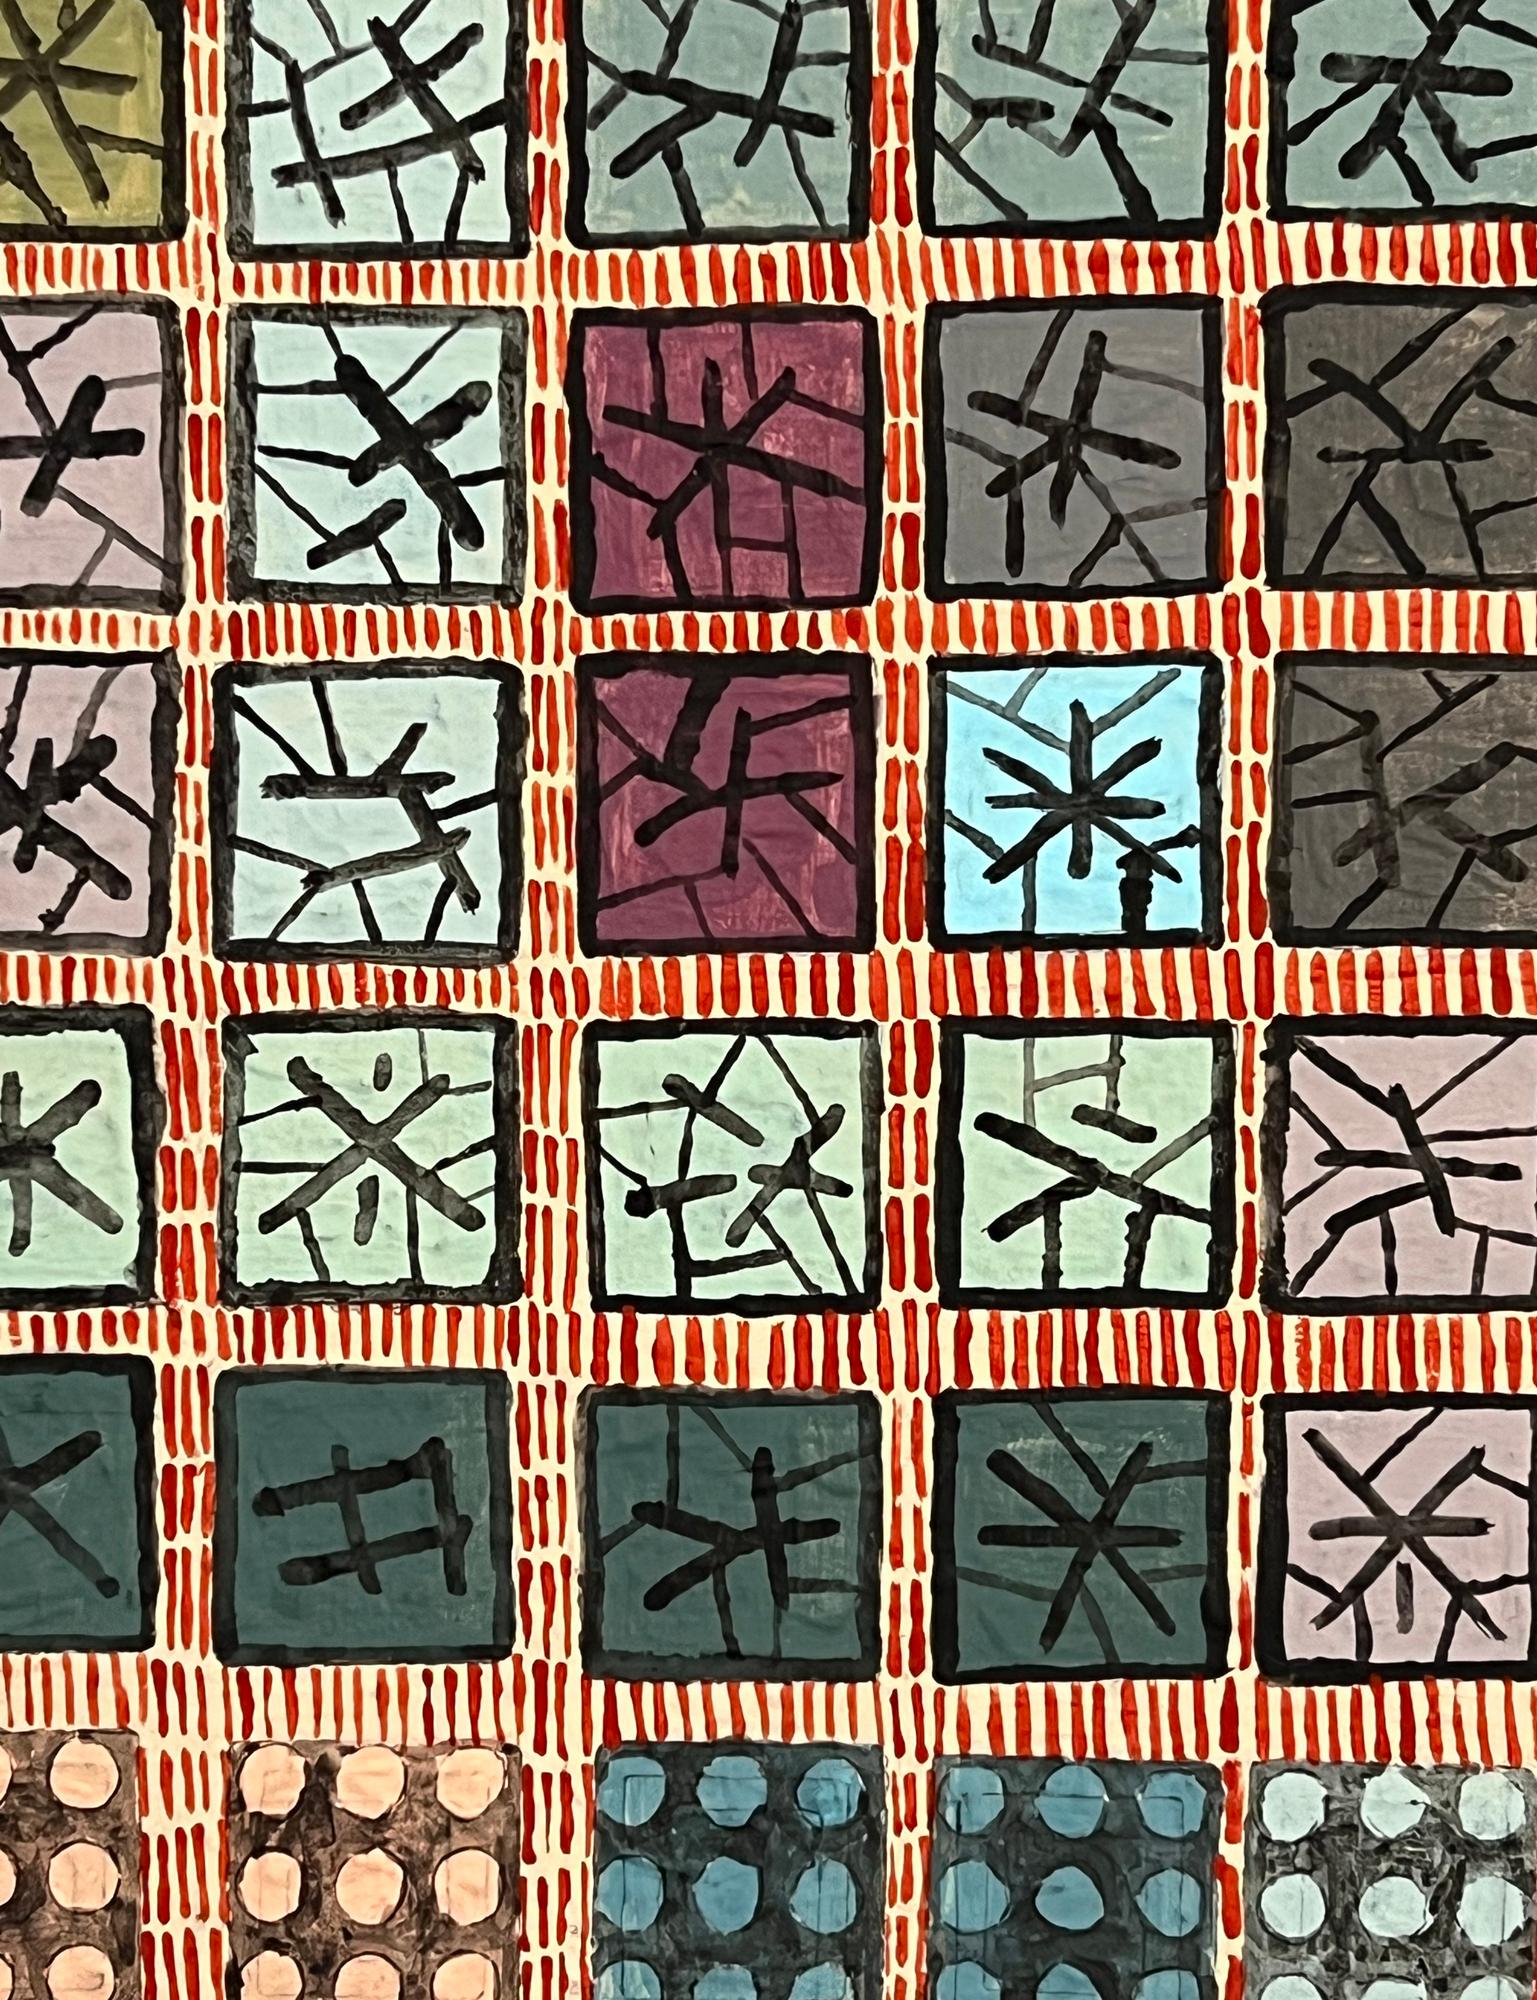 <p>Commentaires de l'artiste<br>L'artiste Terri Bell présente une grille abstraite dans différentes couleurs et arrangements. Elle rend hommage au batik, une technique indonésienne traditionnelle de teinture de tissus recouverts de cire. Les tons